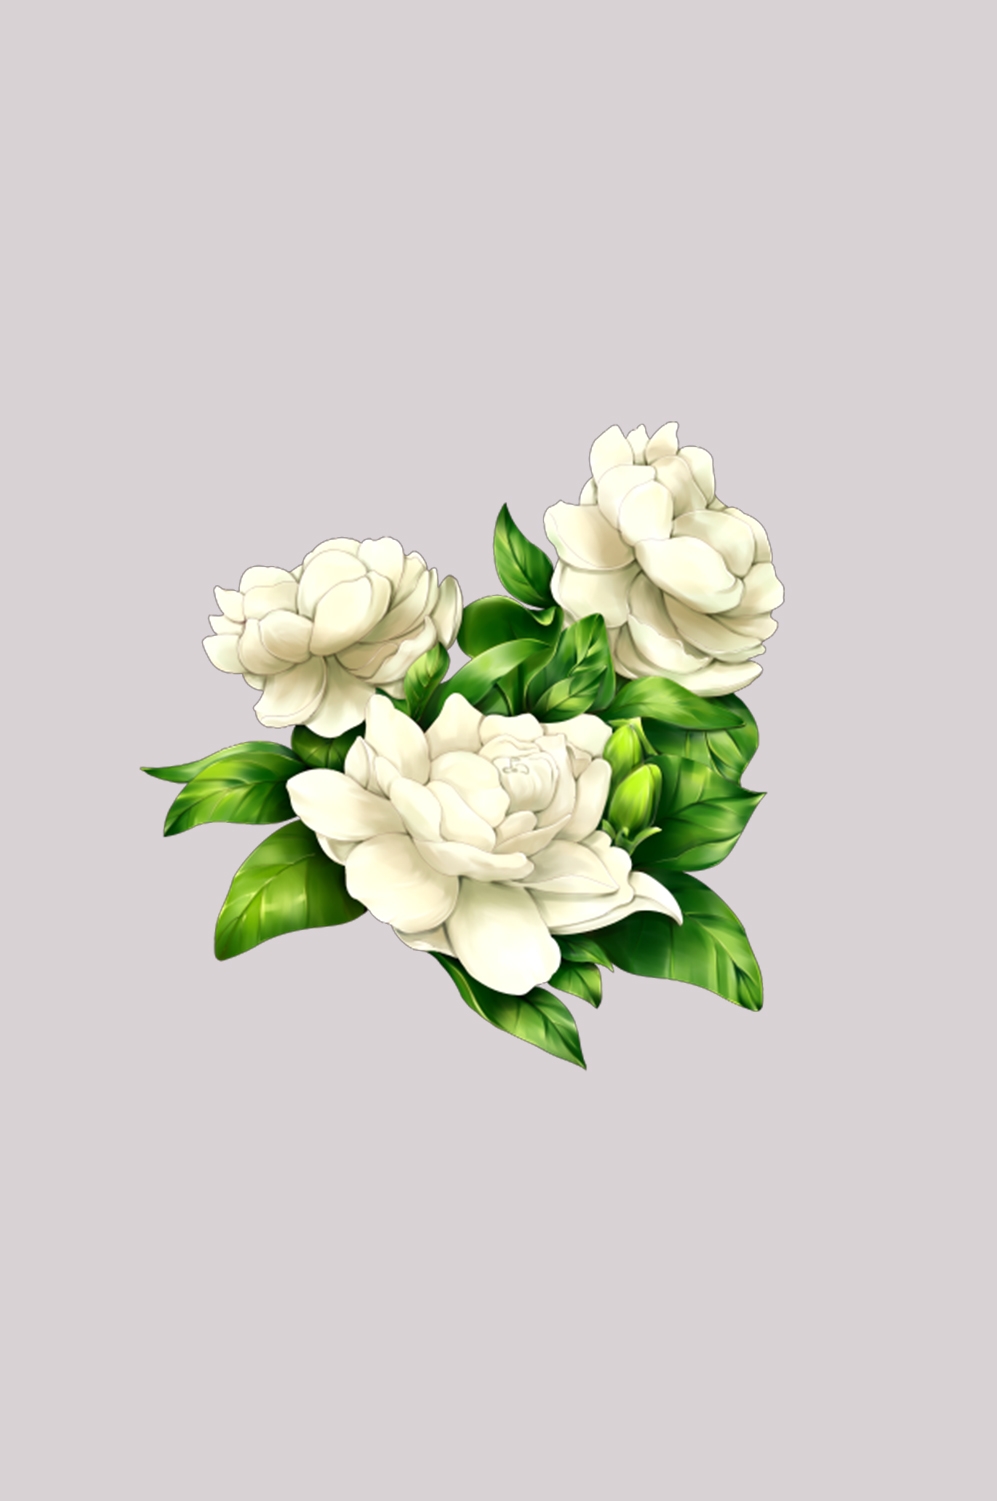 清新淡雅栀子花朵图片素材免抠元素40